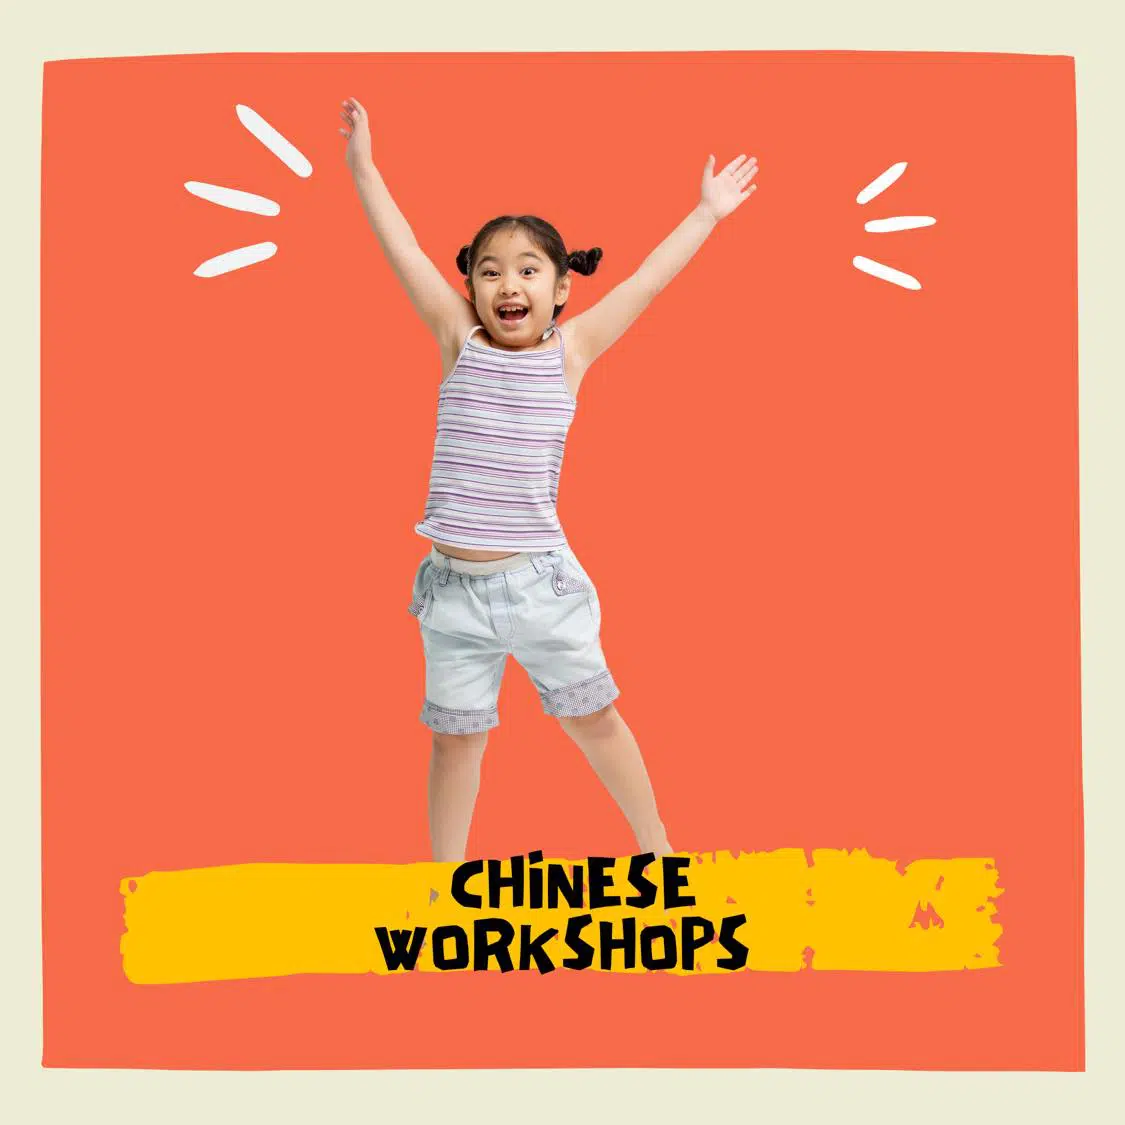 September Holiday Workshops 2021 singapore for children